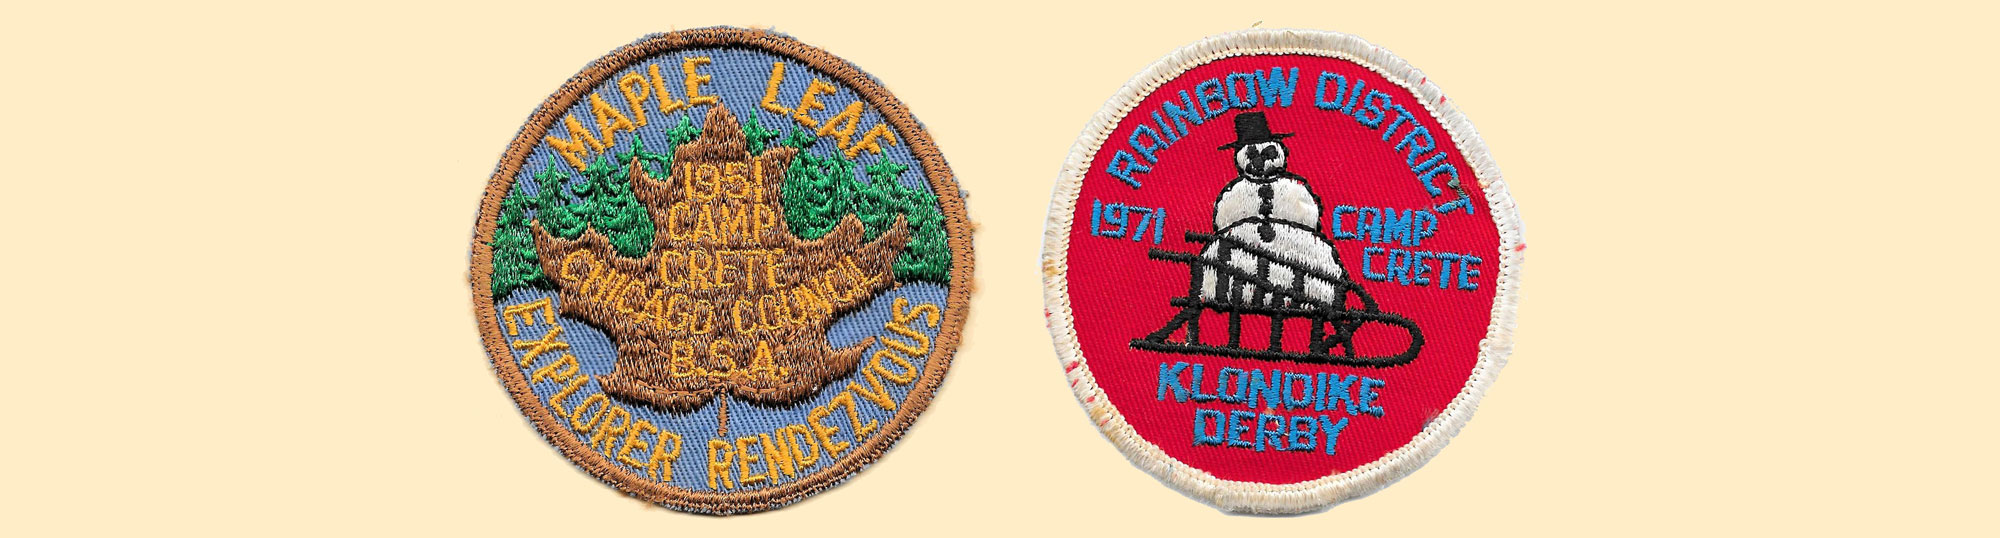 Scout badges.